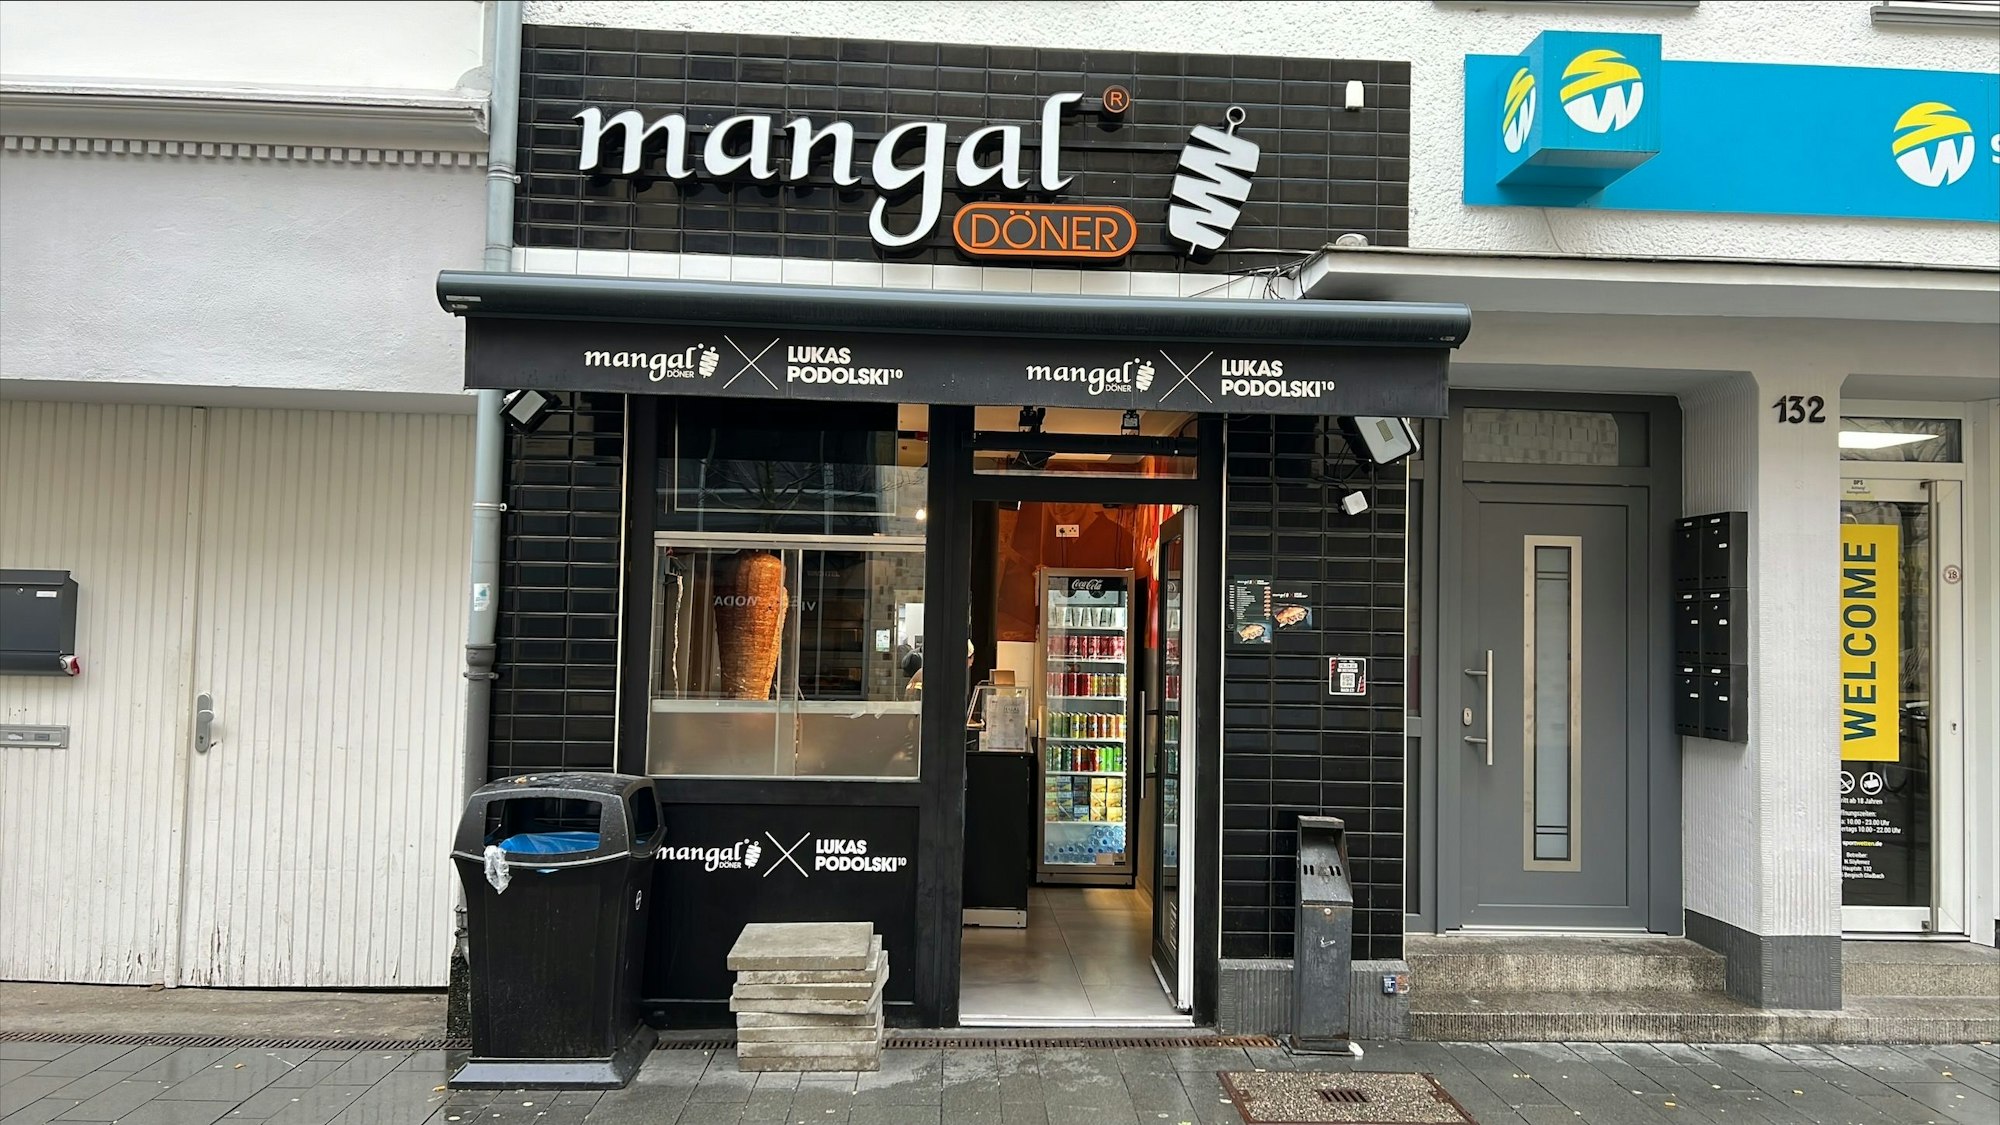 Das Mangal Döner Restaurant in der Bergisch Gladbcher Innenstadt von außen.